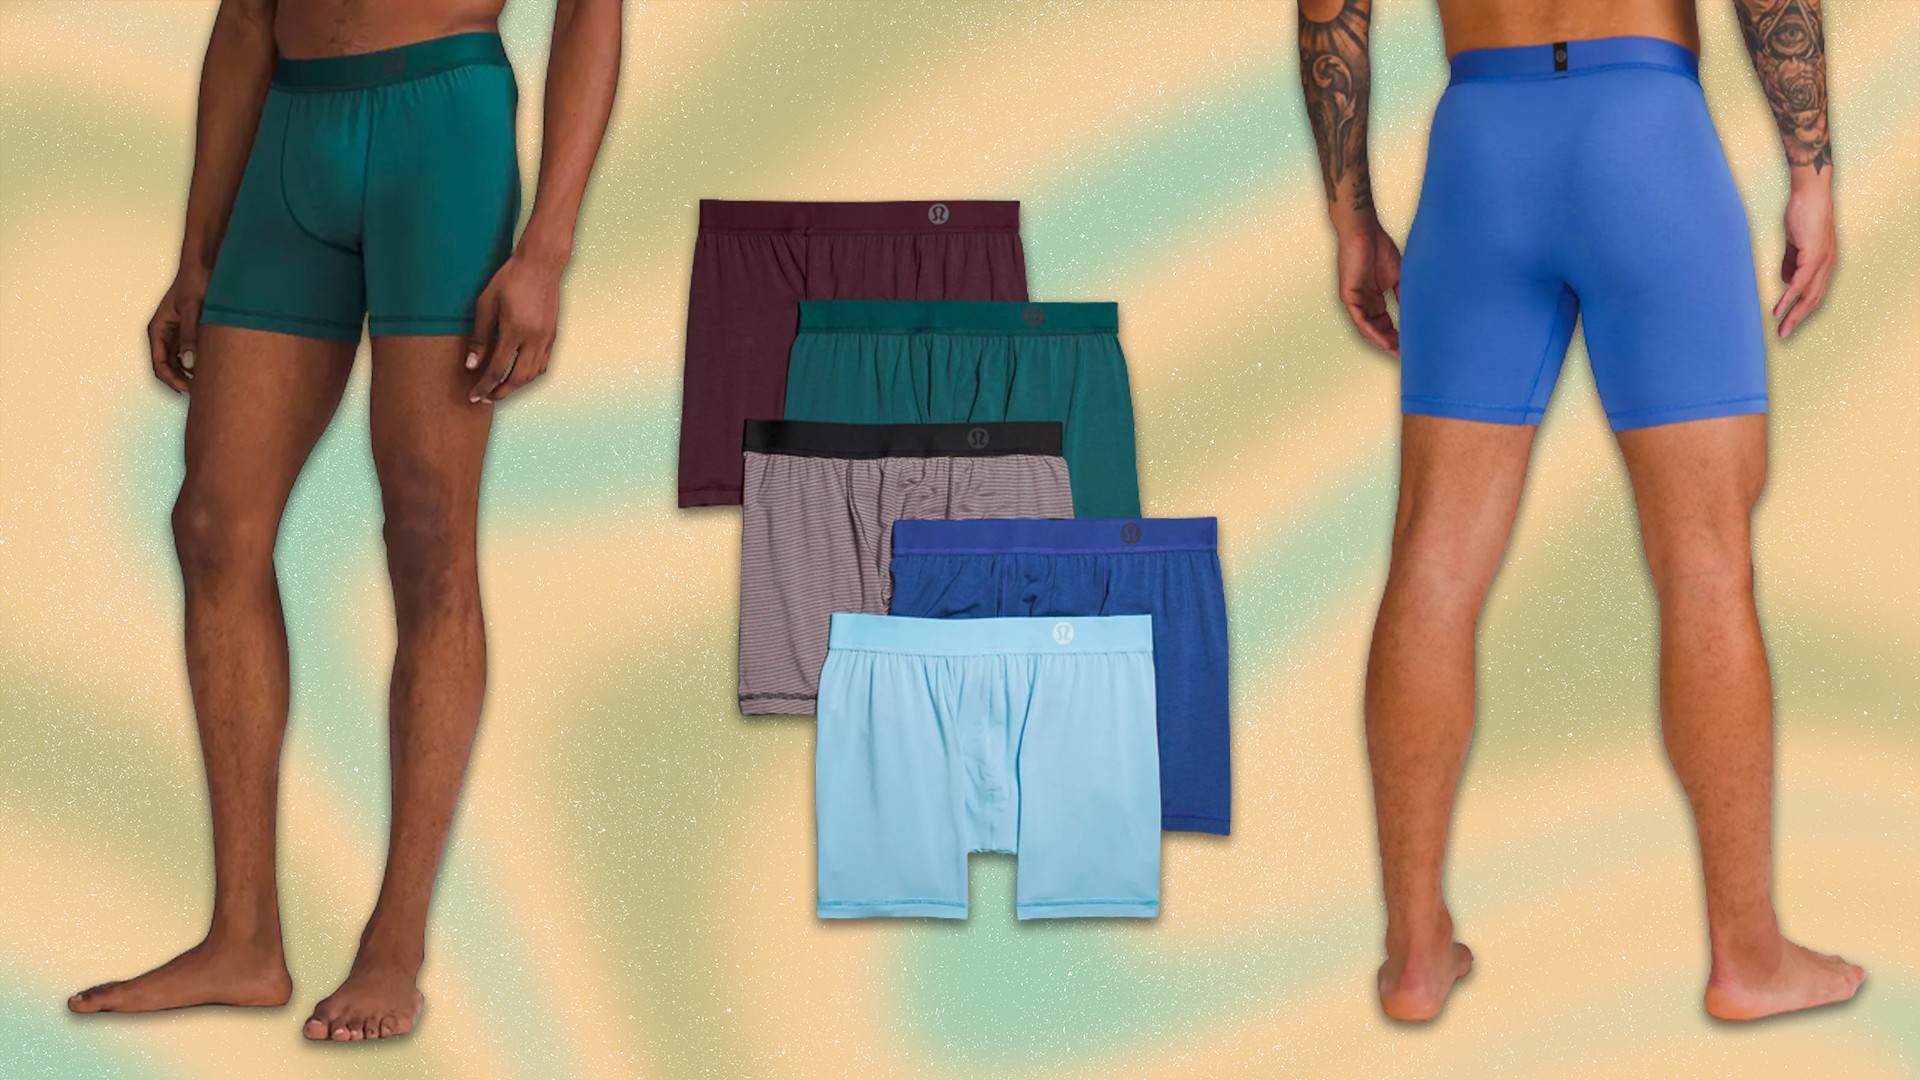 men's underwear try on + review  LULU LEMON Always in Motion briefs! 